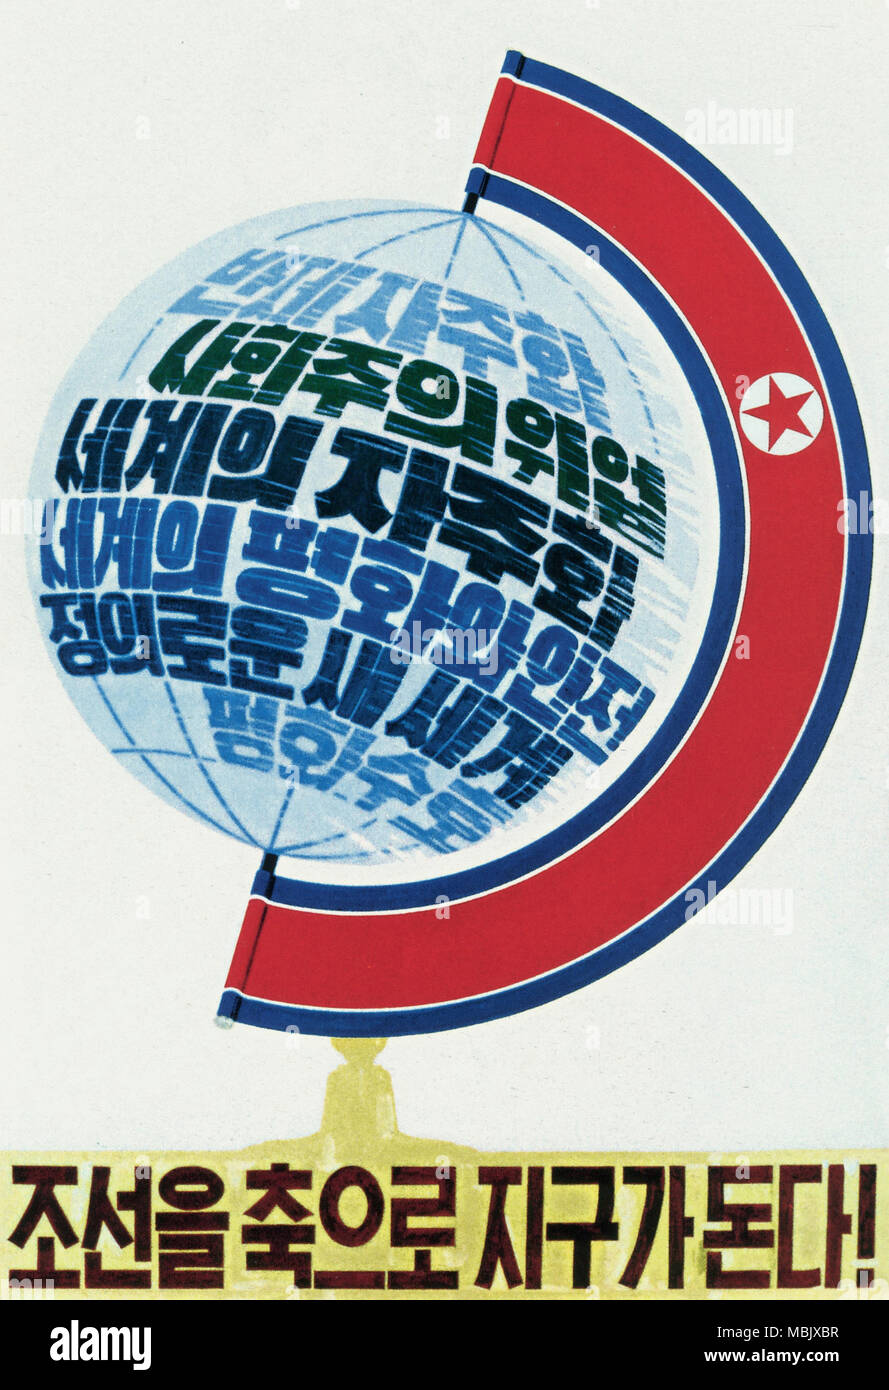 Il mondo gira con la Corea come suo asse! Foto Stock